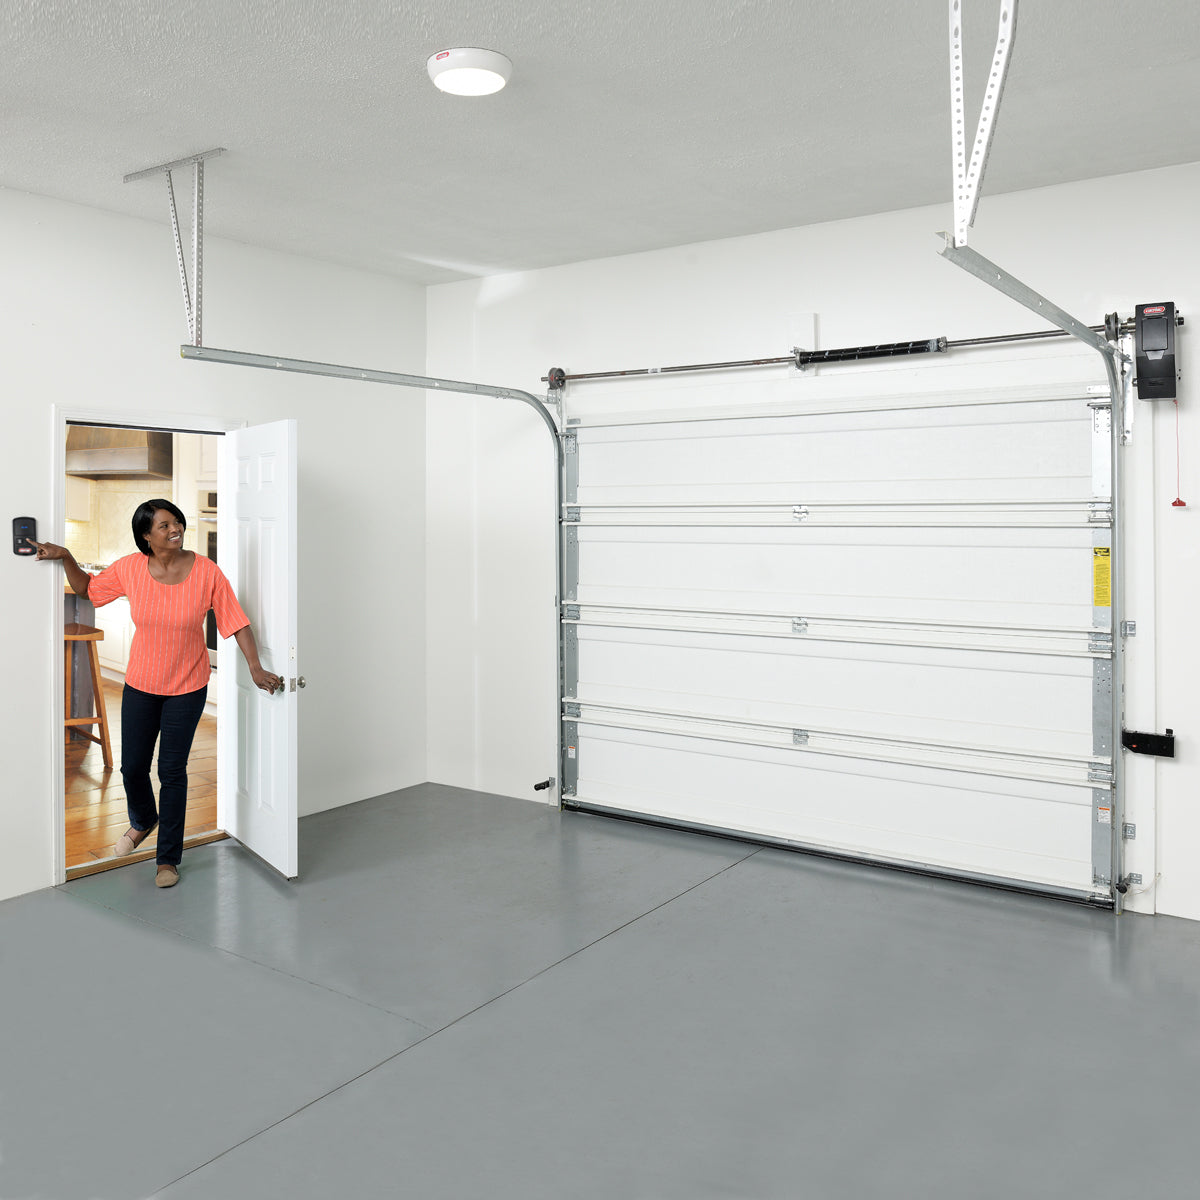 Genie side/wall mount garage door opener installed in a garage